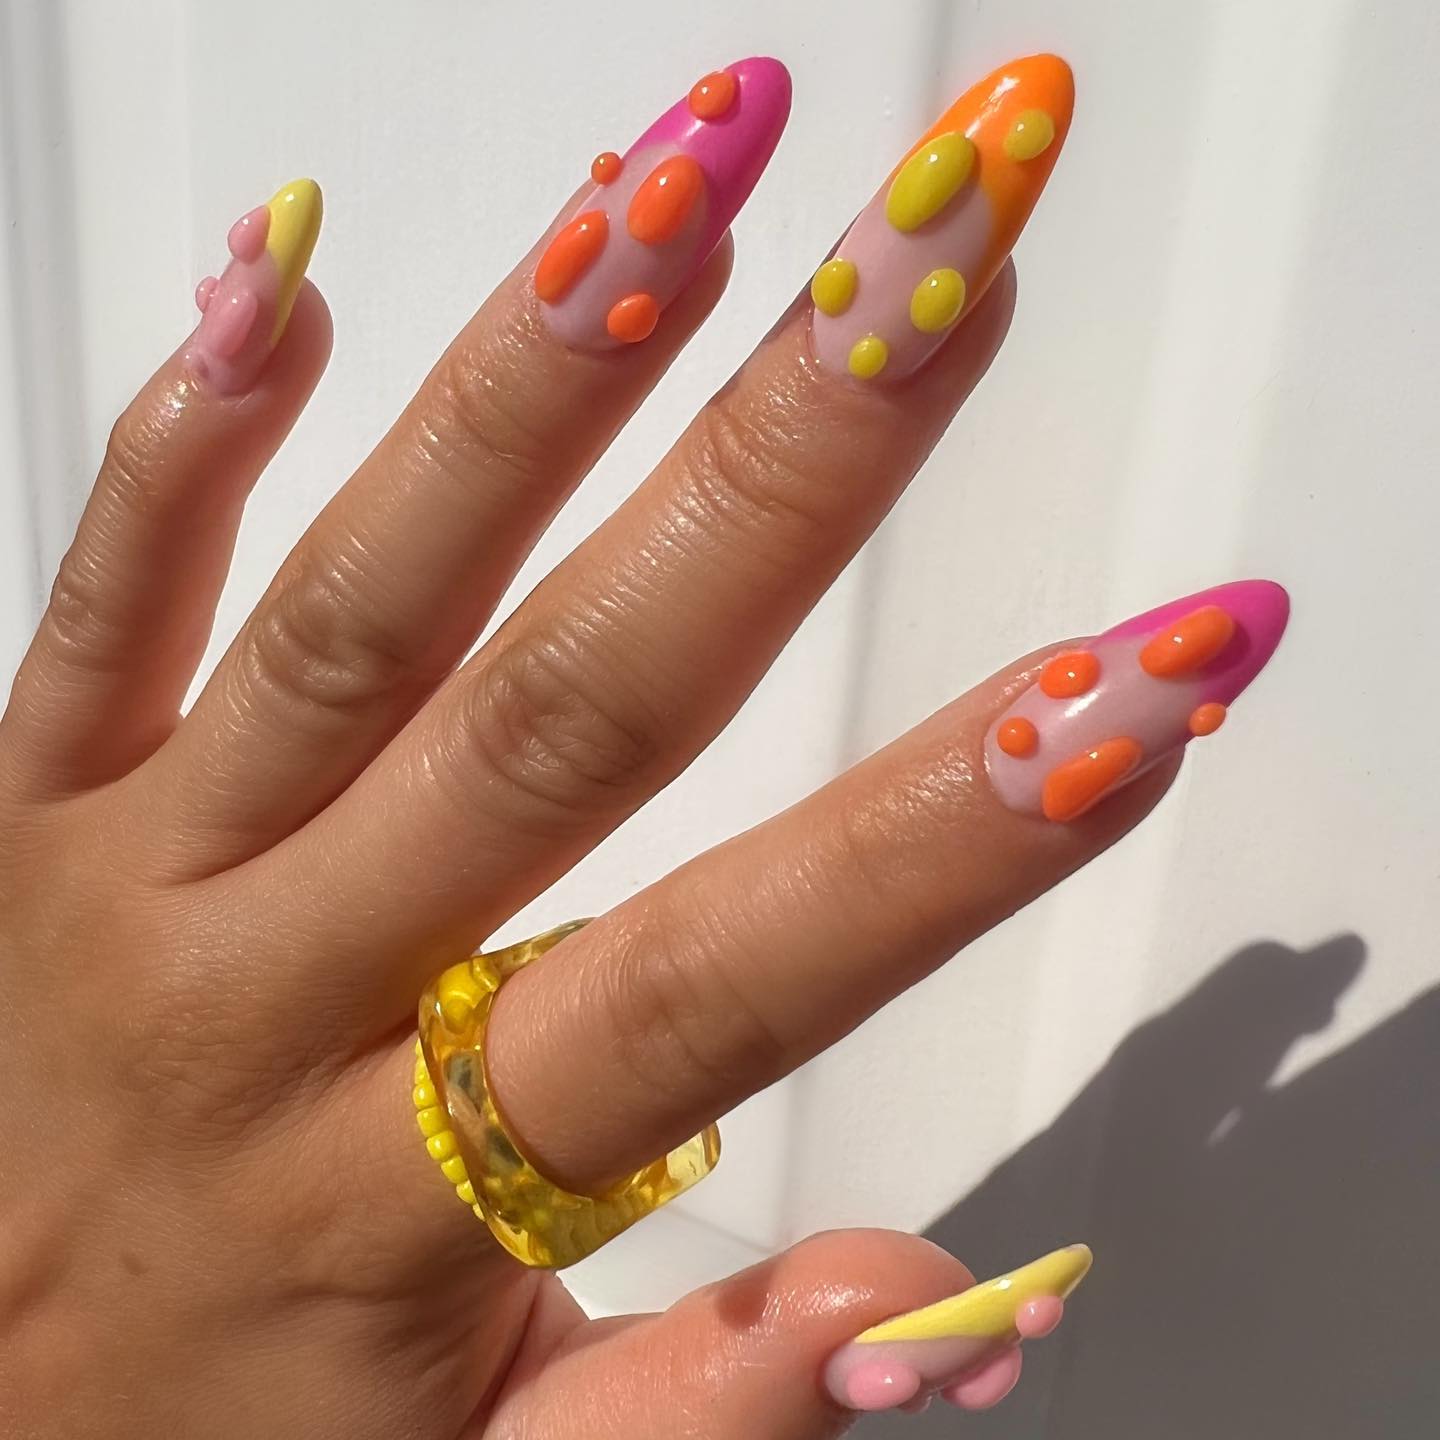 3D Franse nagels met kleurrijke vlekken